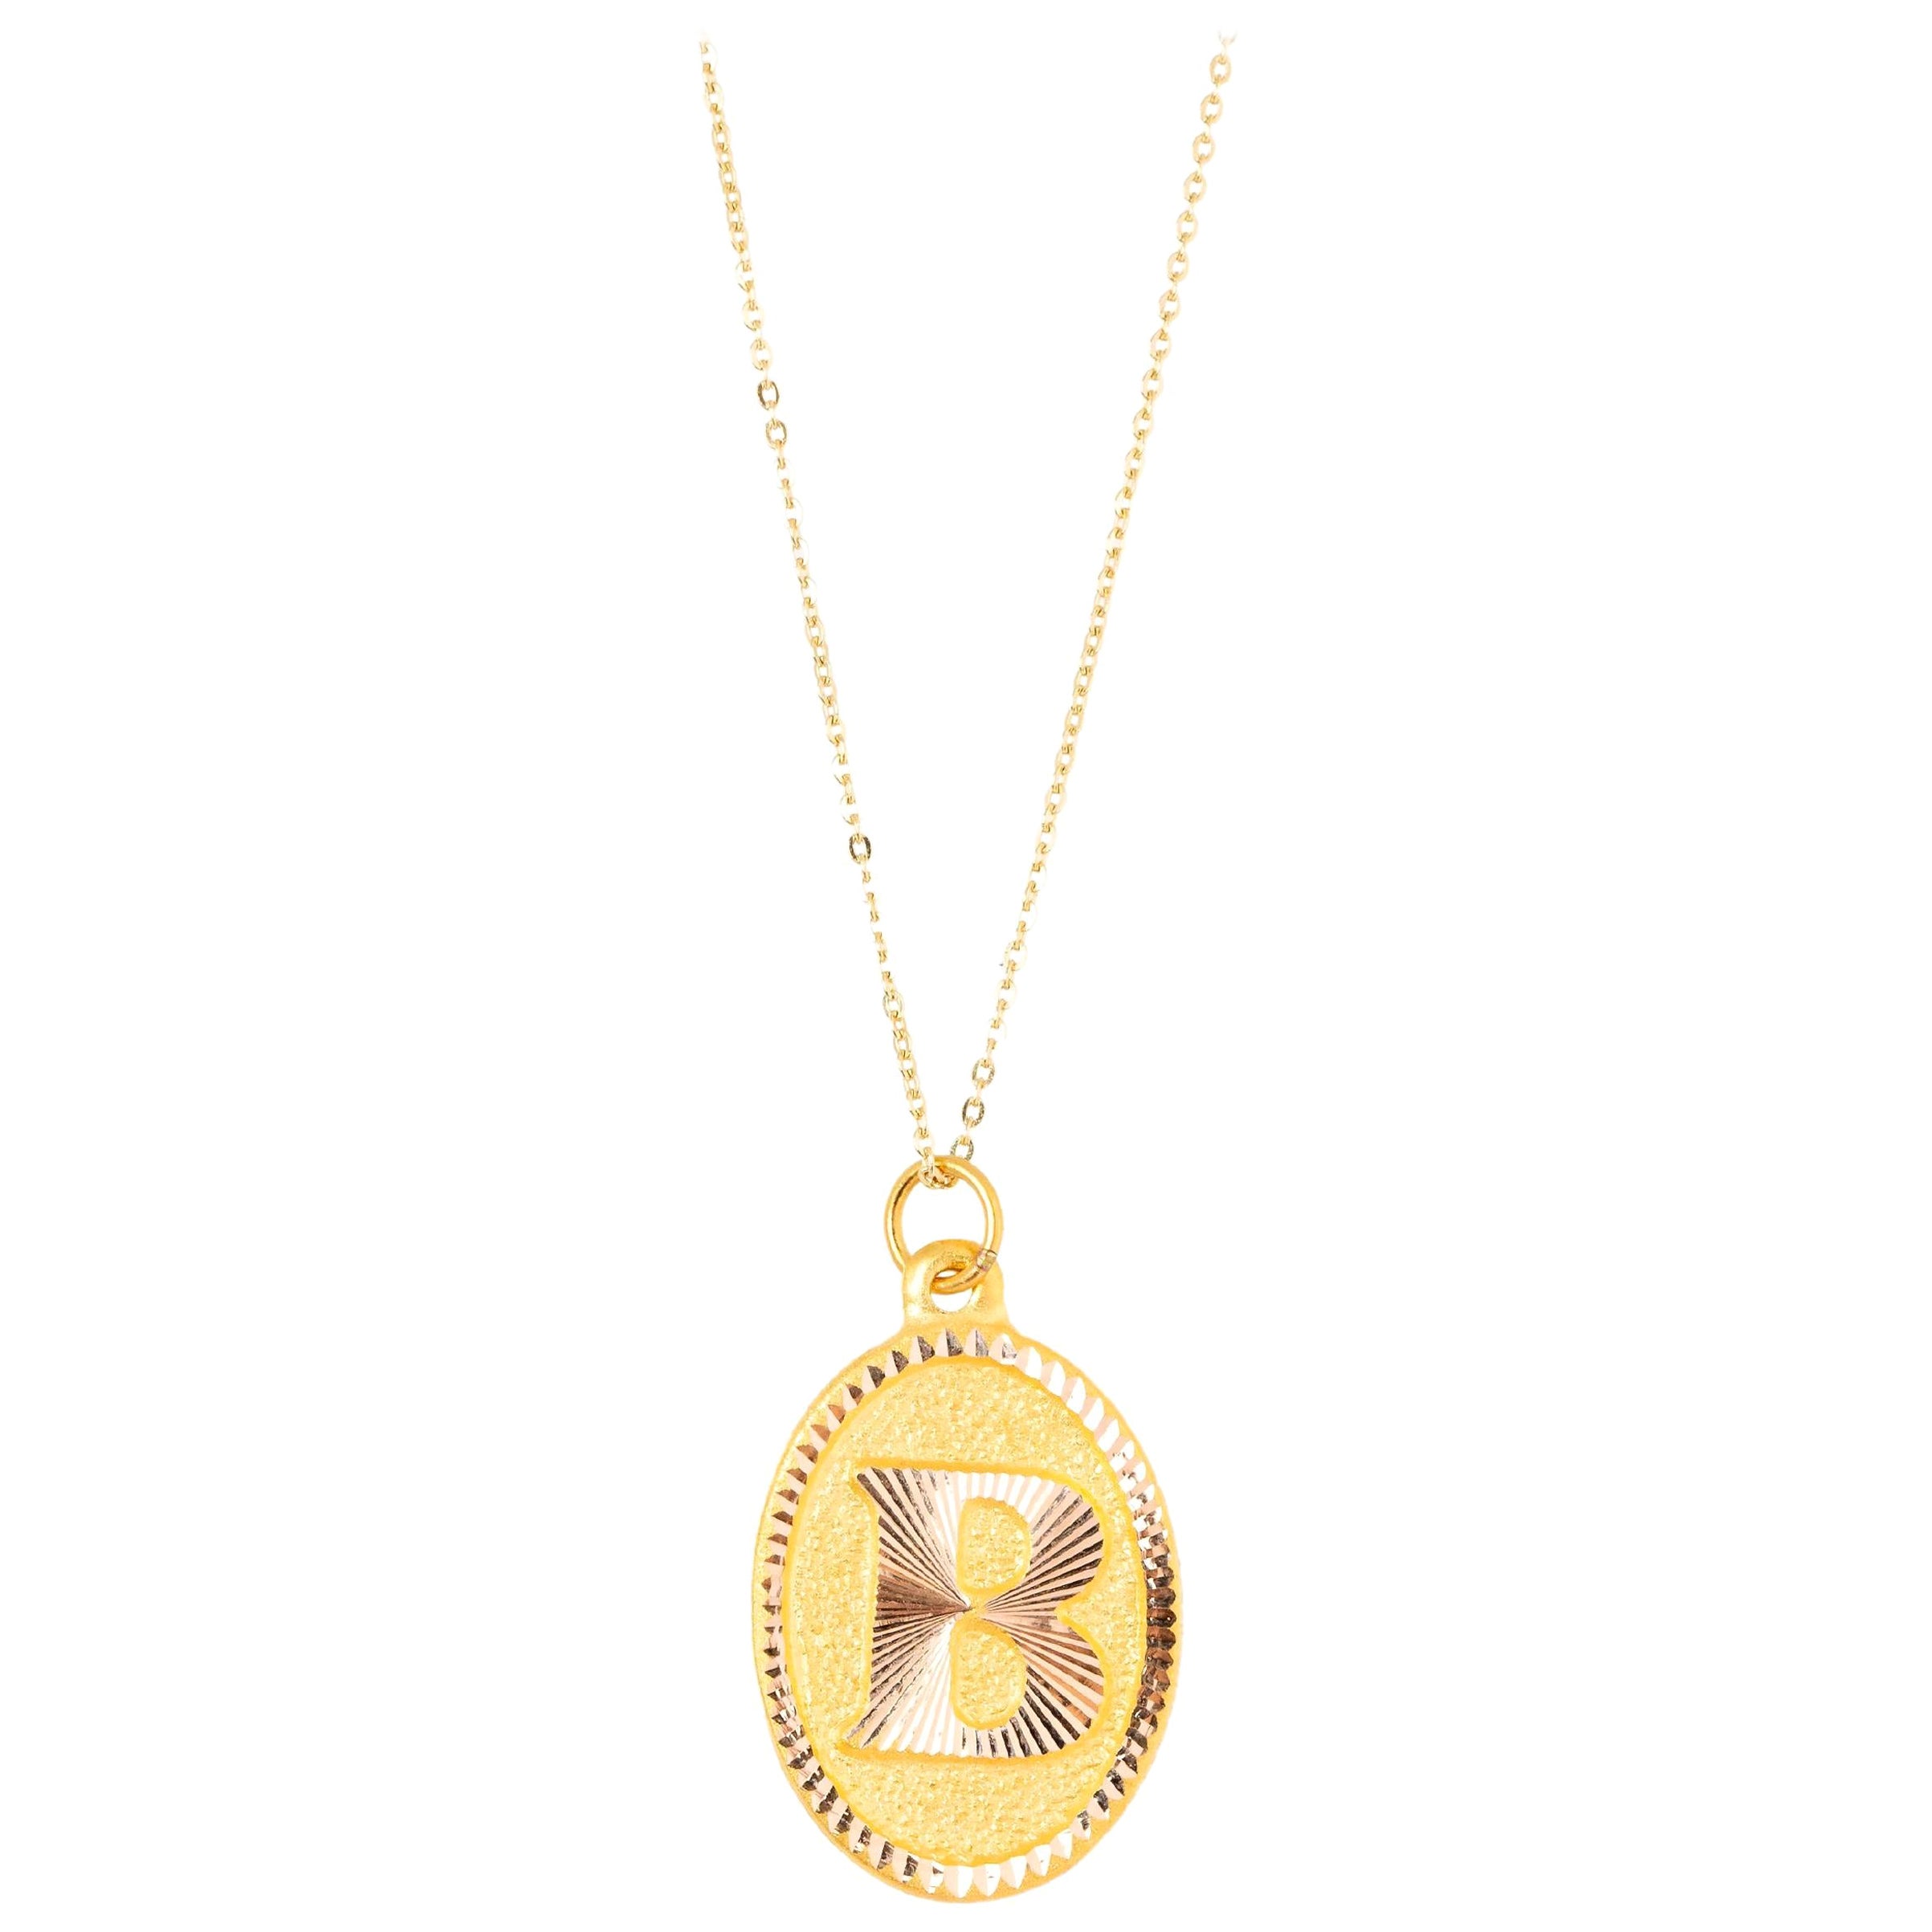 14k Gold Necklaces, Letter Necklace Models, Letter B Gold Necklace-Gift Necklace